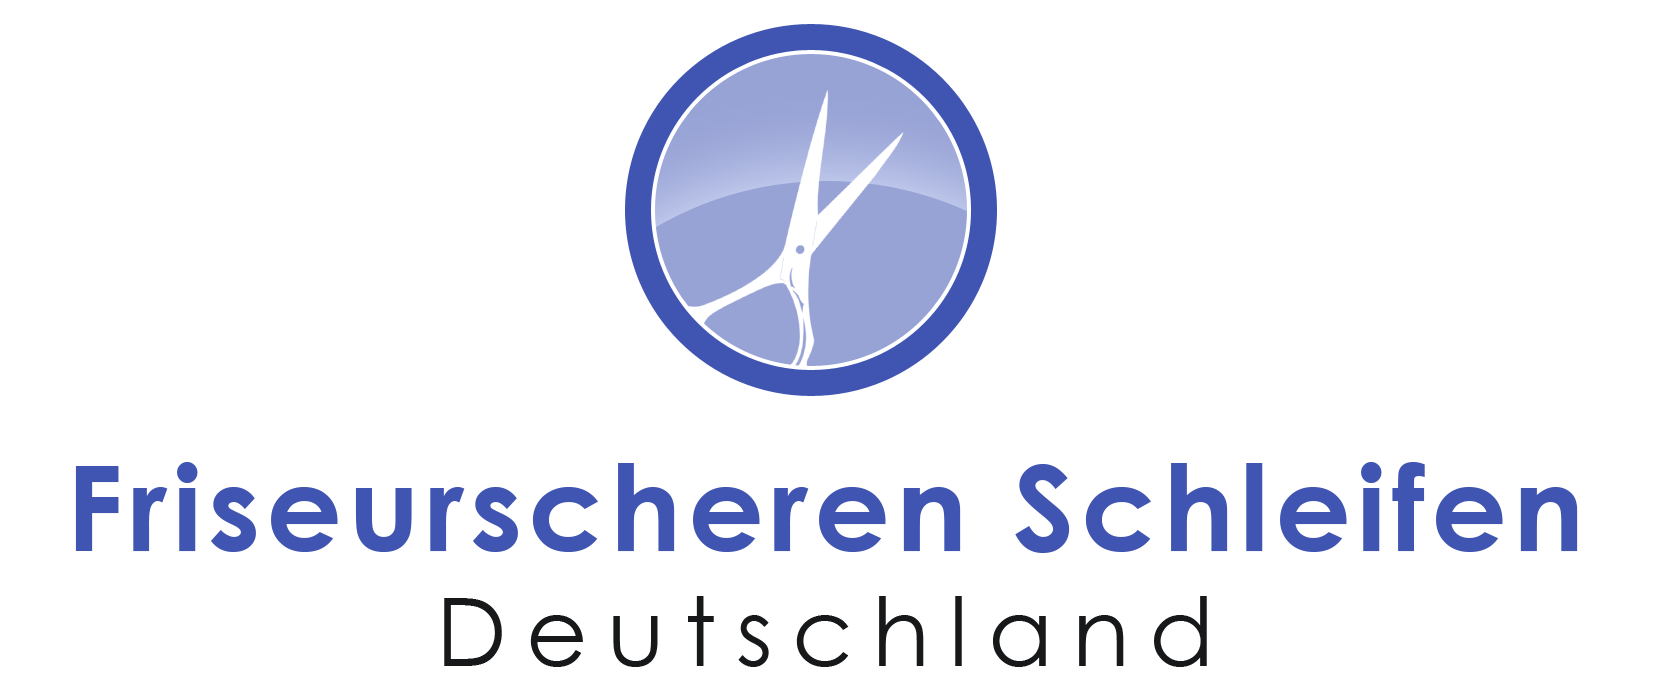 Friseurscheren Schleifen Deutschland Logo